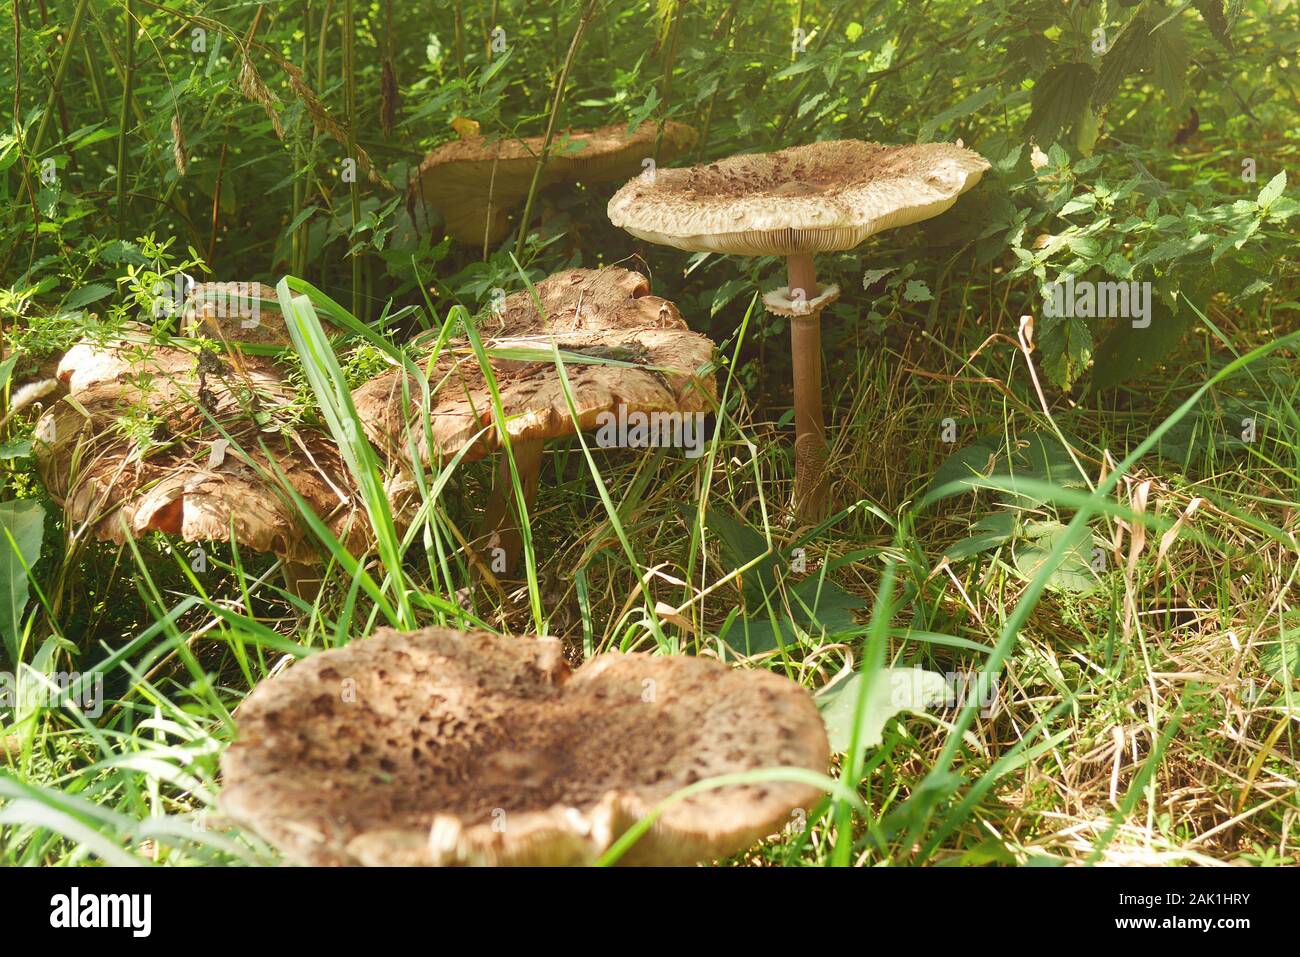 Pilze im Gras (Macrolepiota procera, der Sonnenschirm Pilz) - Mehrere große Pilze auf der Wiese im hohen Gras, sonnigen Tag Stockfoto